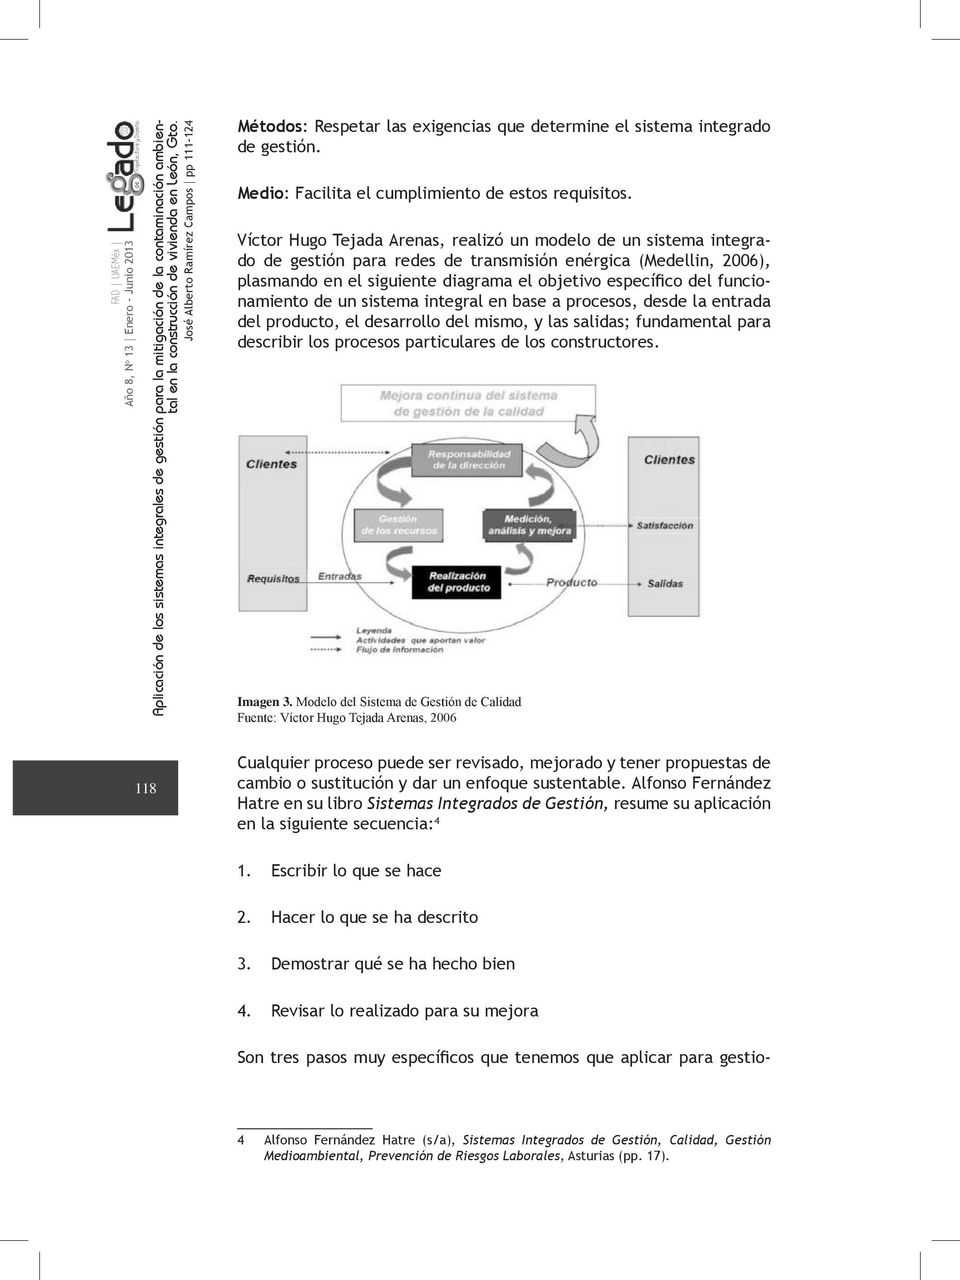 Víctor Hugo Tejada Arenas, realizó un modelo de un sistema integrado de gestión para redes de transmisión enérgica (Medellin, 2006), plasmando en el siguiente diagrama el objetivo específico del